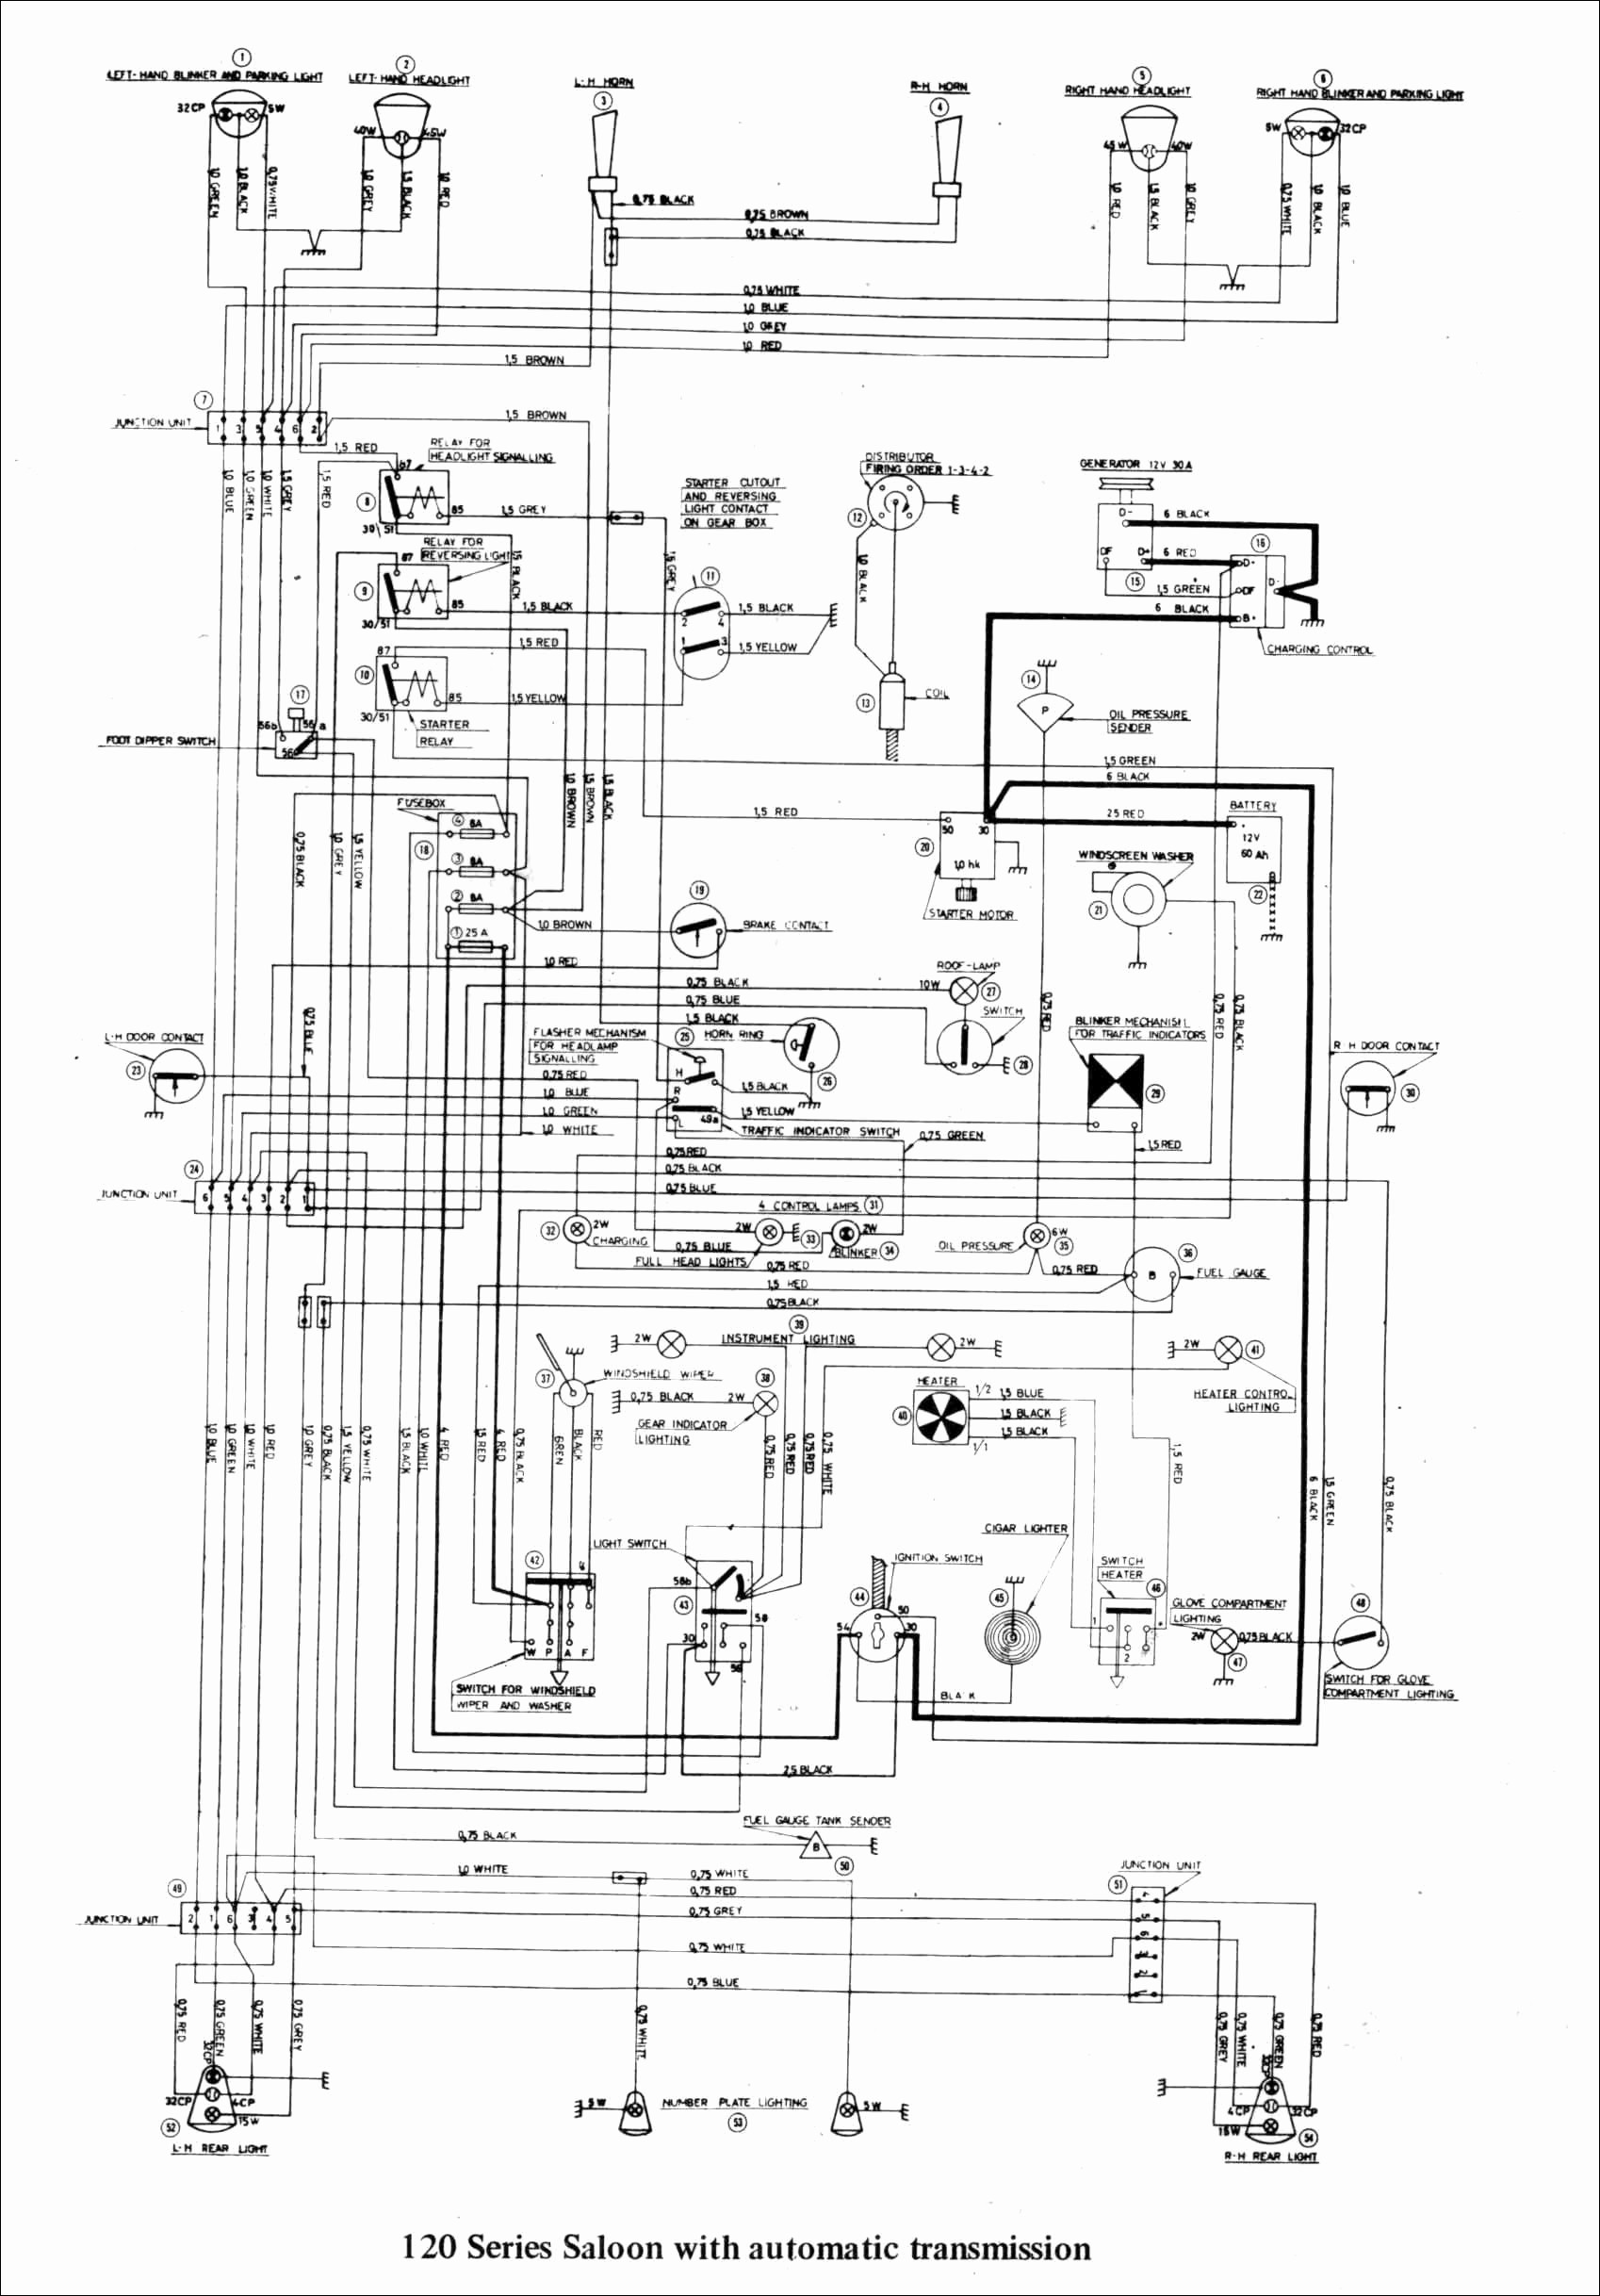 Rv Plug Wiring Diagram Spark Plug Wiring Diagram Chevy 4 3 V6 Of Rv Plug Wiring Diagram